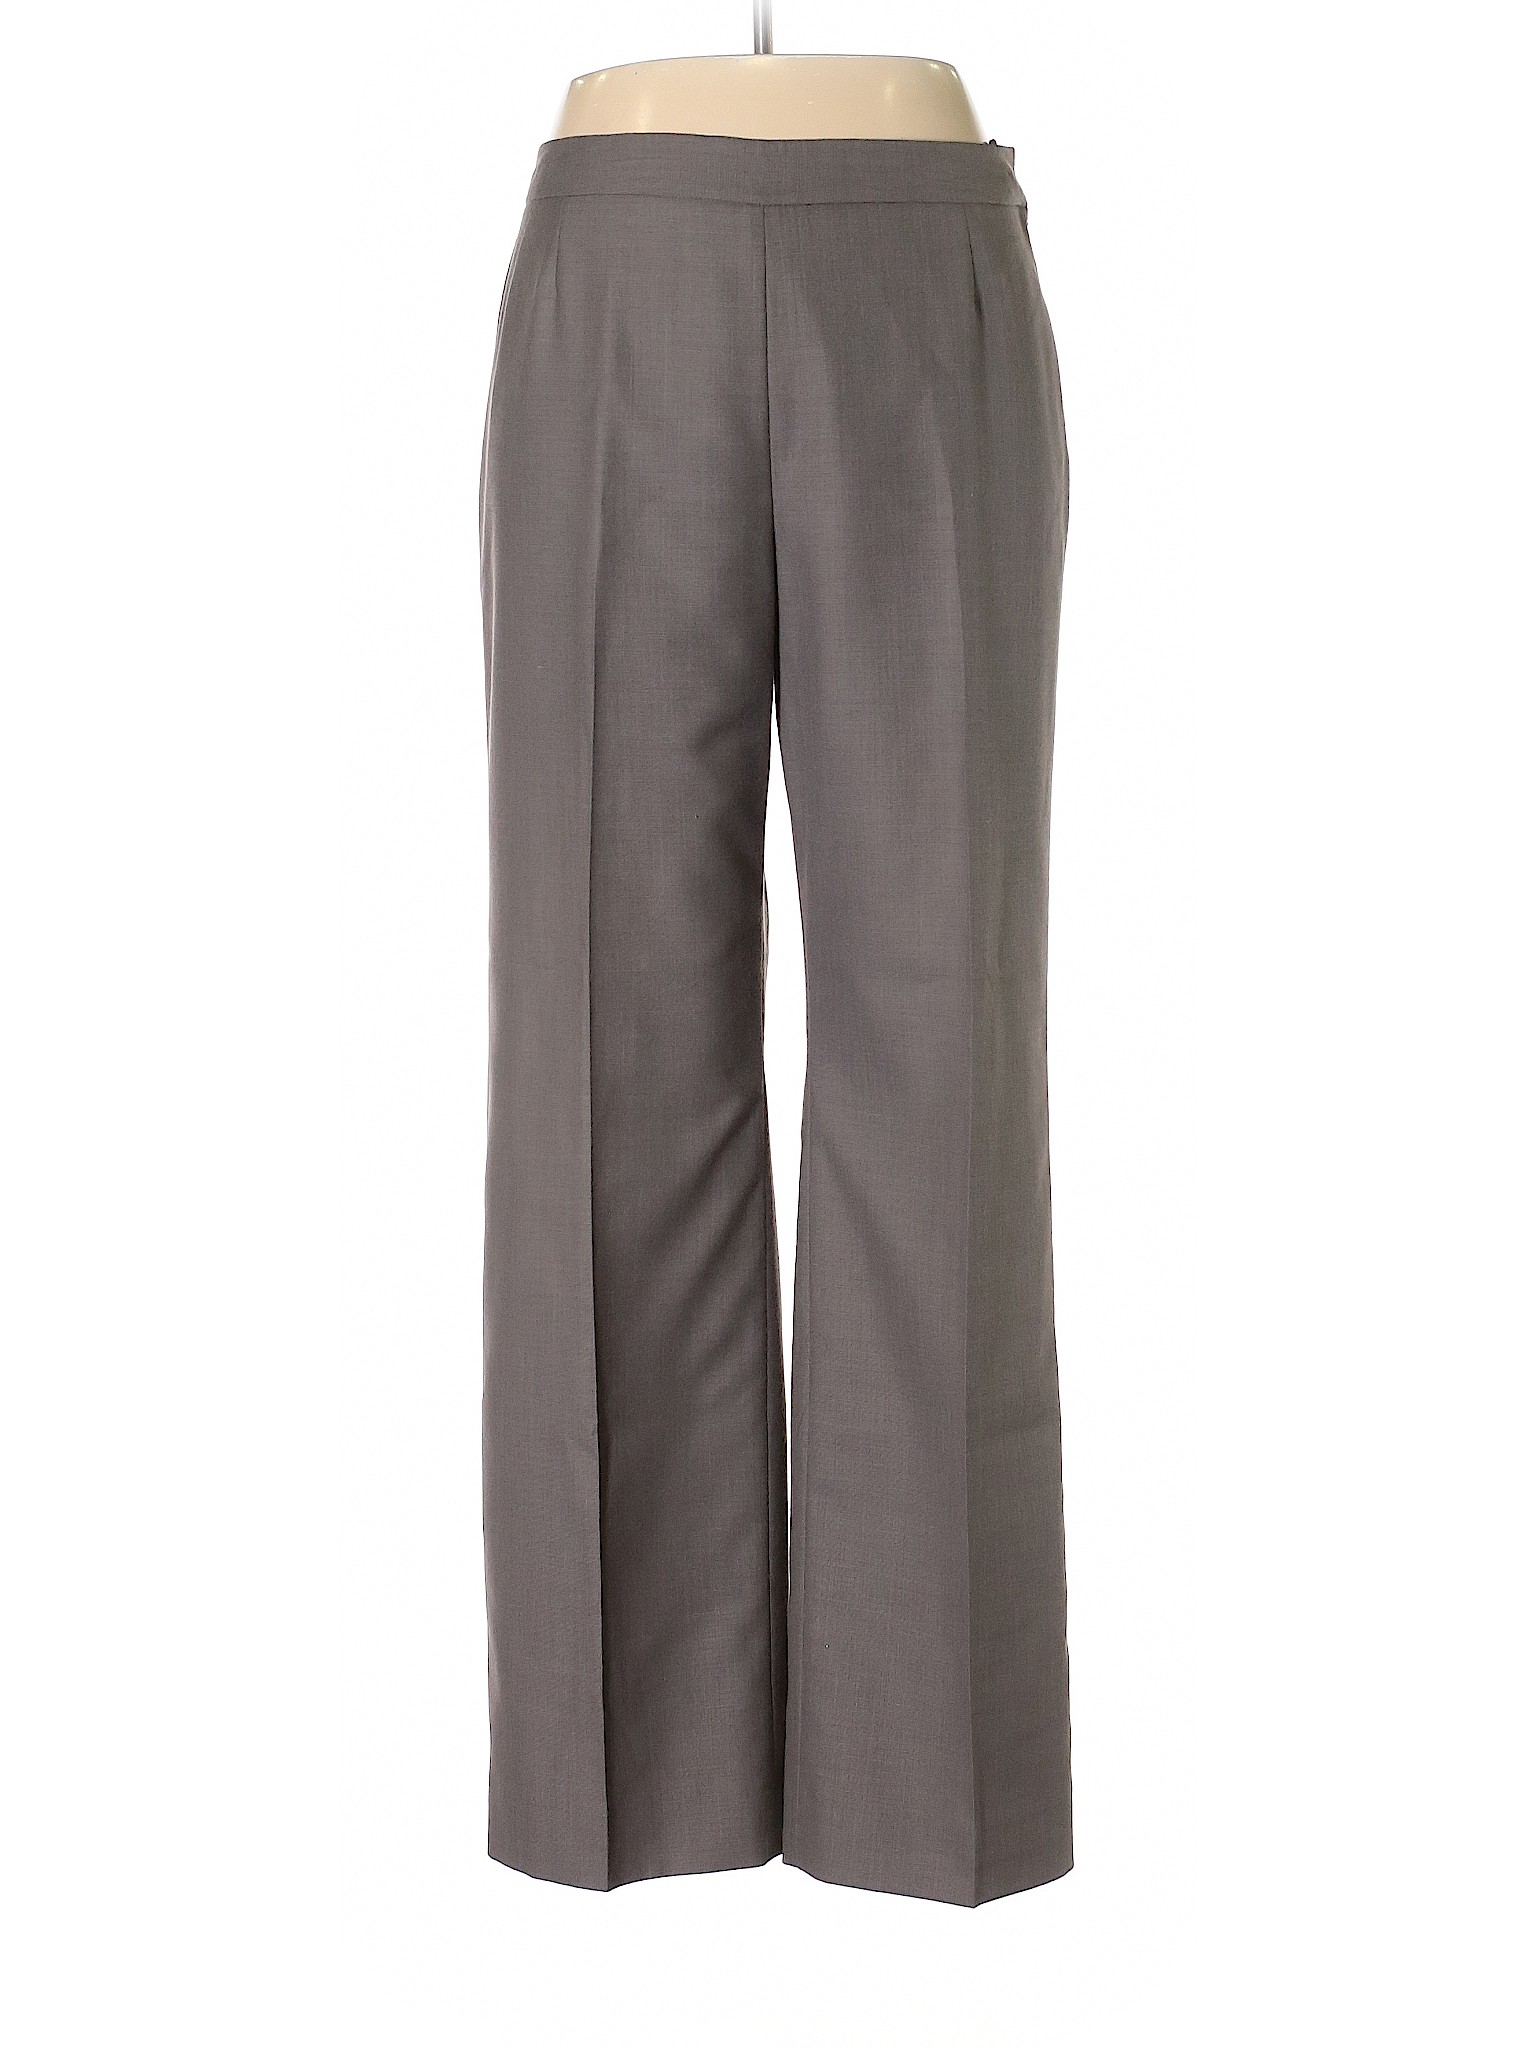 Evan Picone Women Gray Dress Pants 12 | eBay